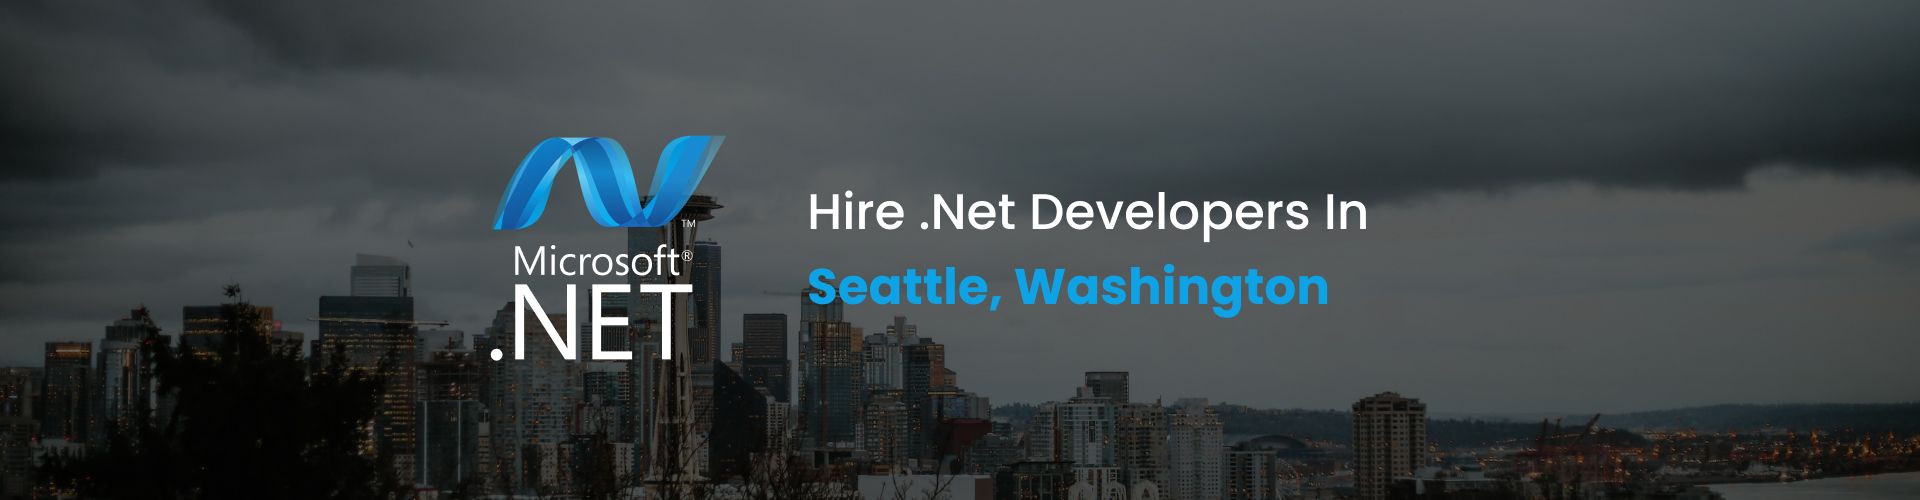 hire dot net developers in seattle